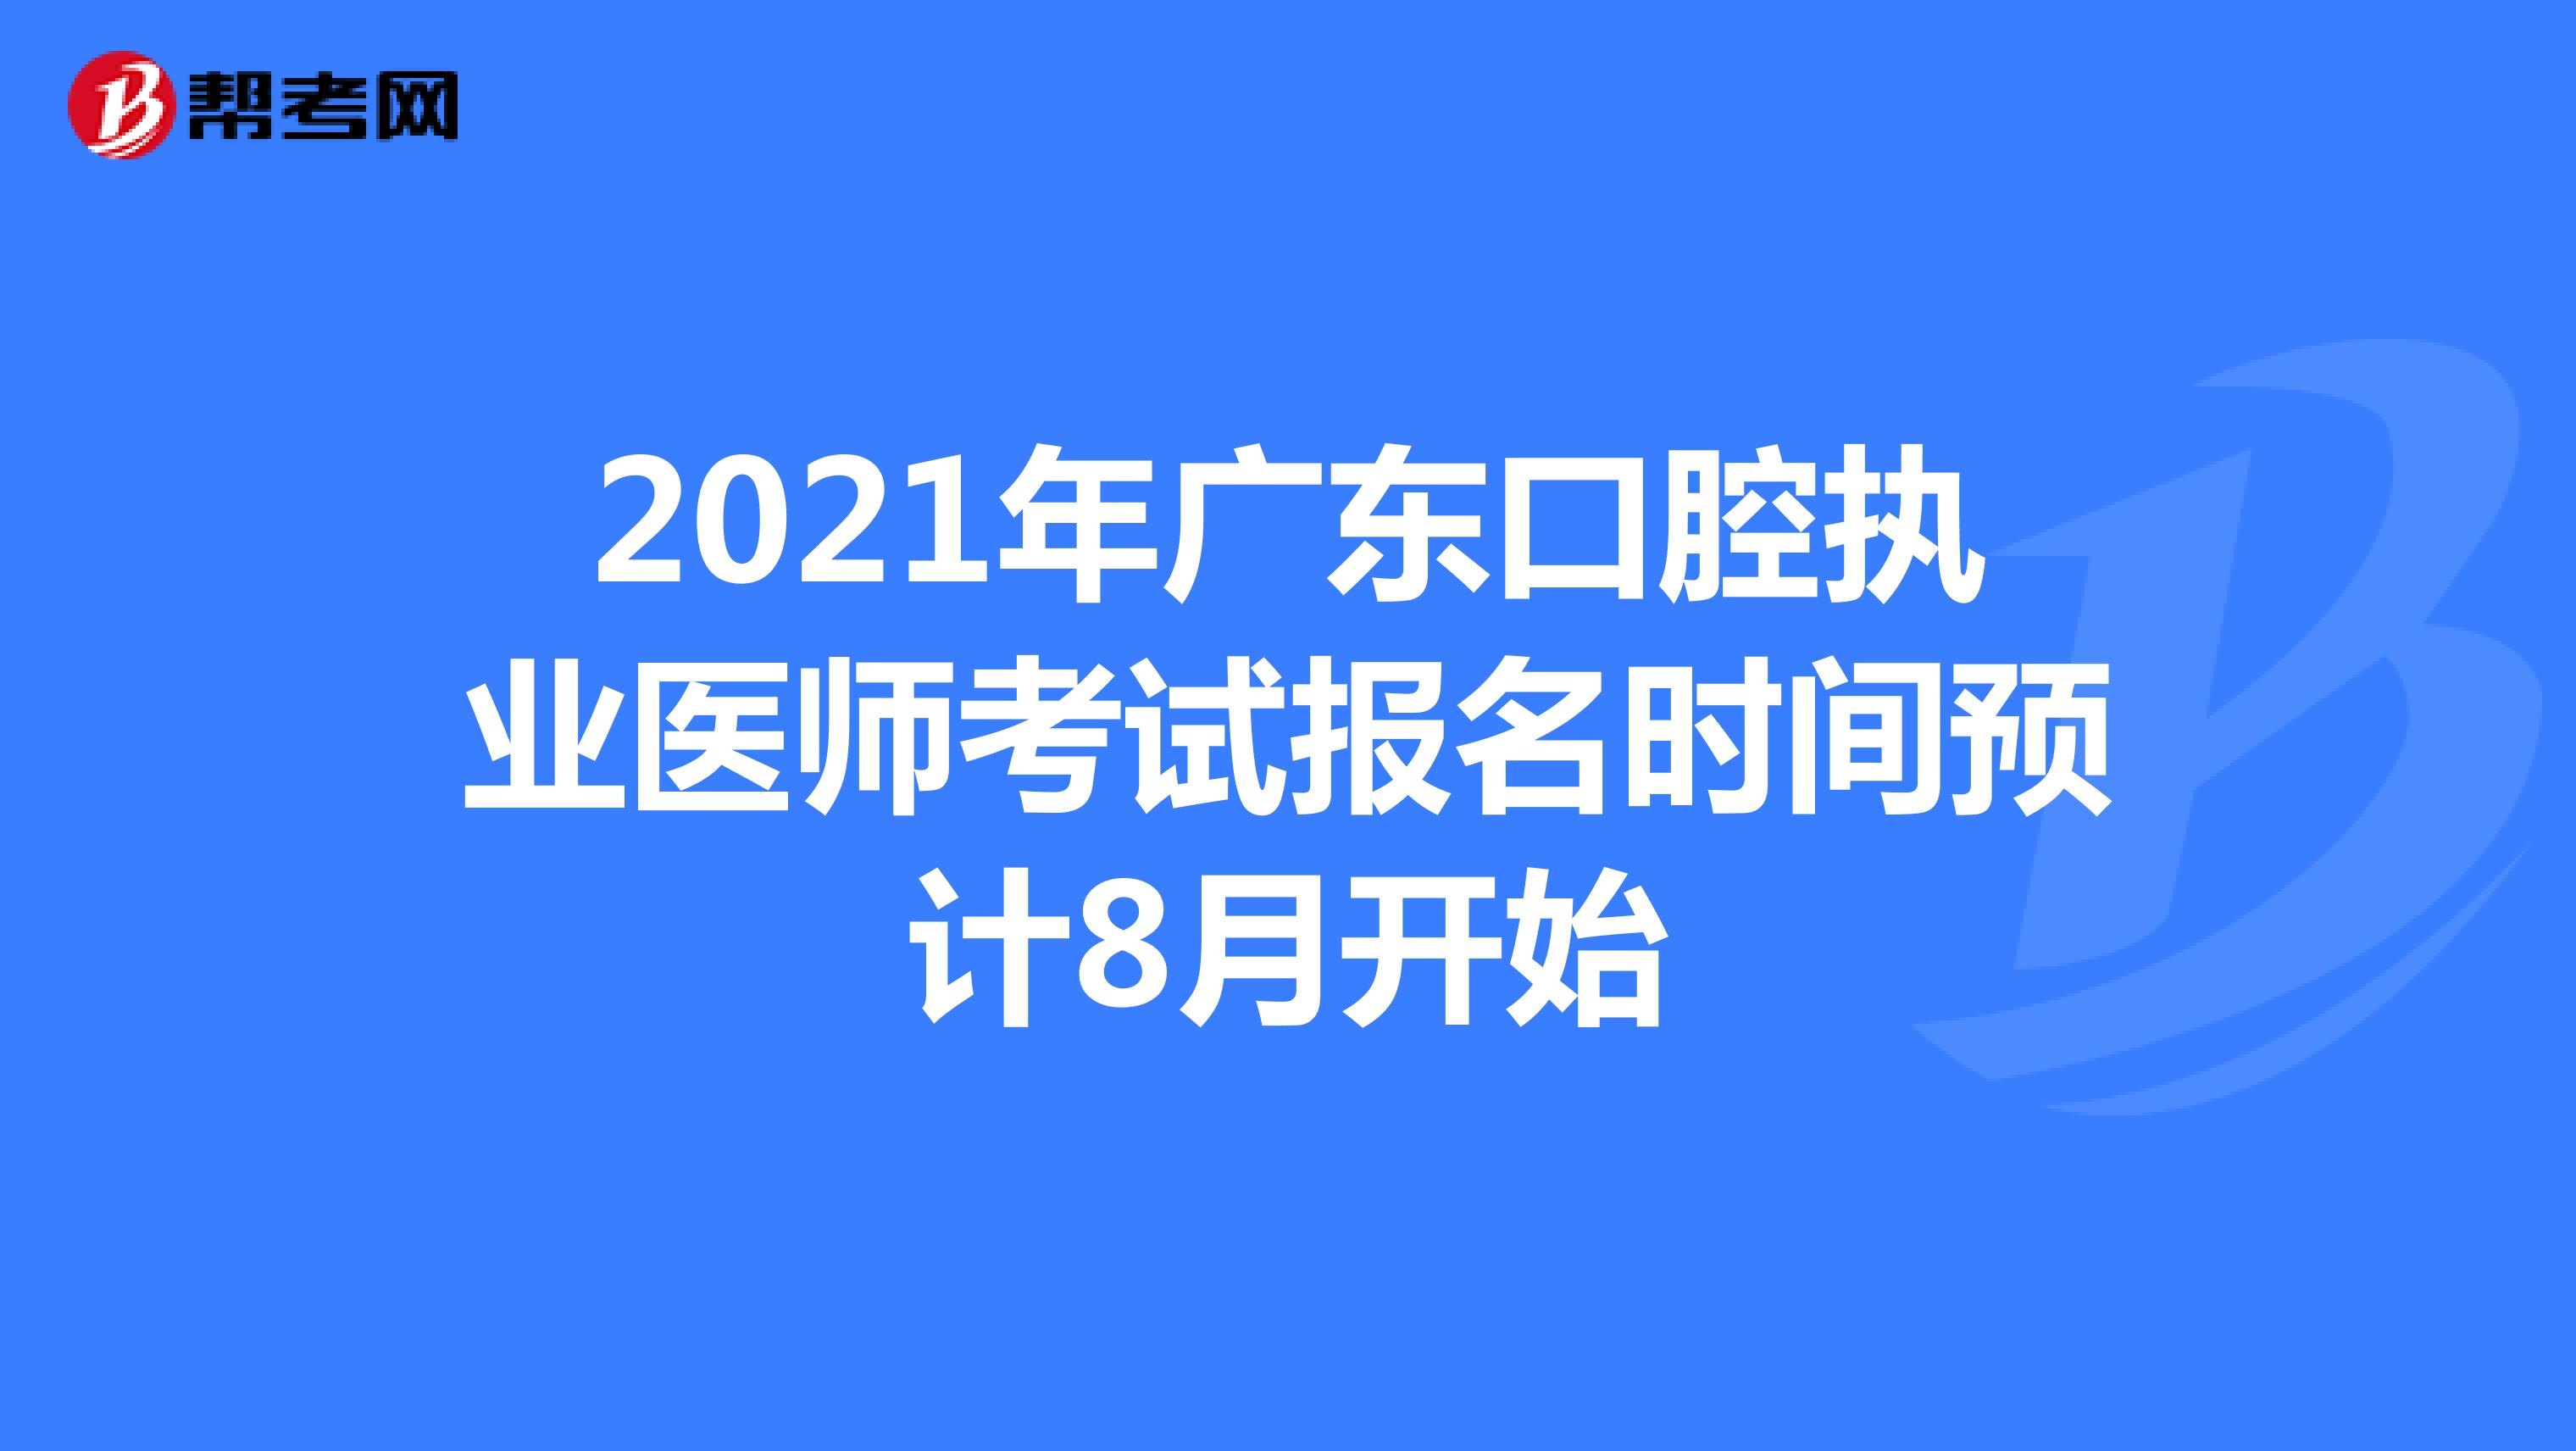 2021年广东口腔执业医师考试报名时间预计8月开始